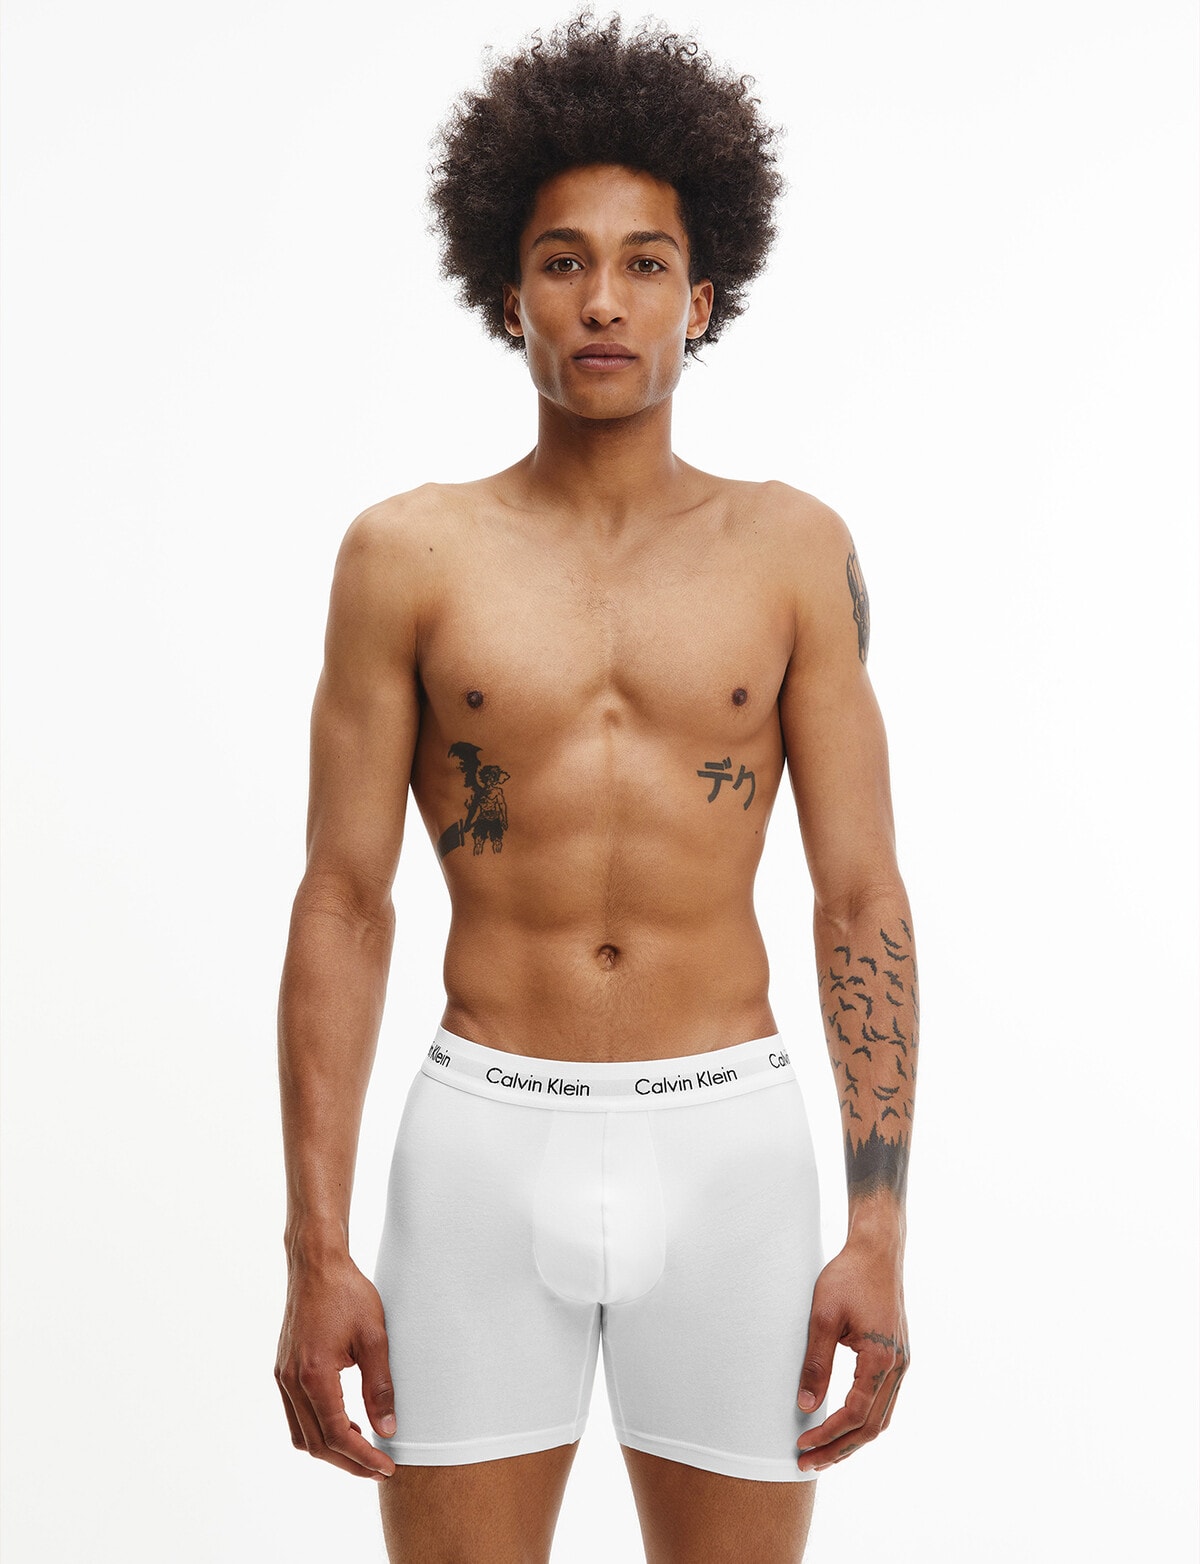 Calvin Klein Cotton Stretch Boxer Brief, 3-Pack, Black, White